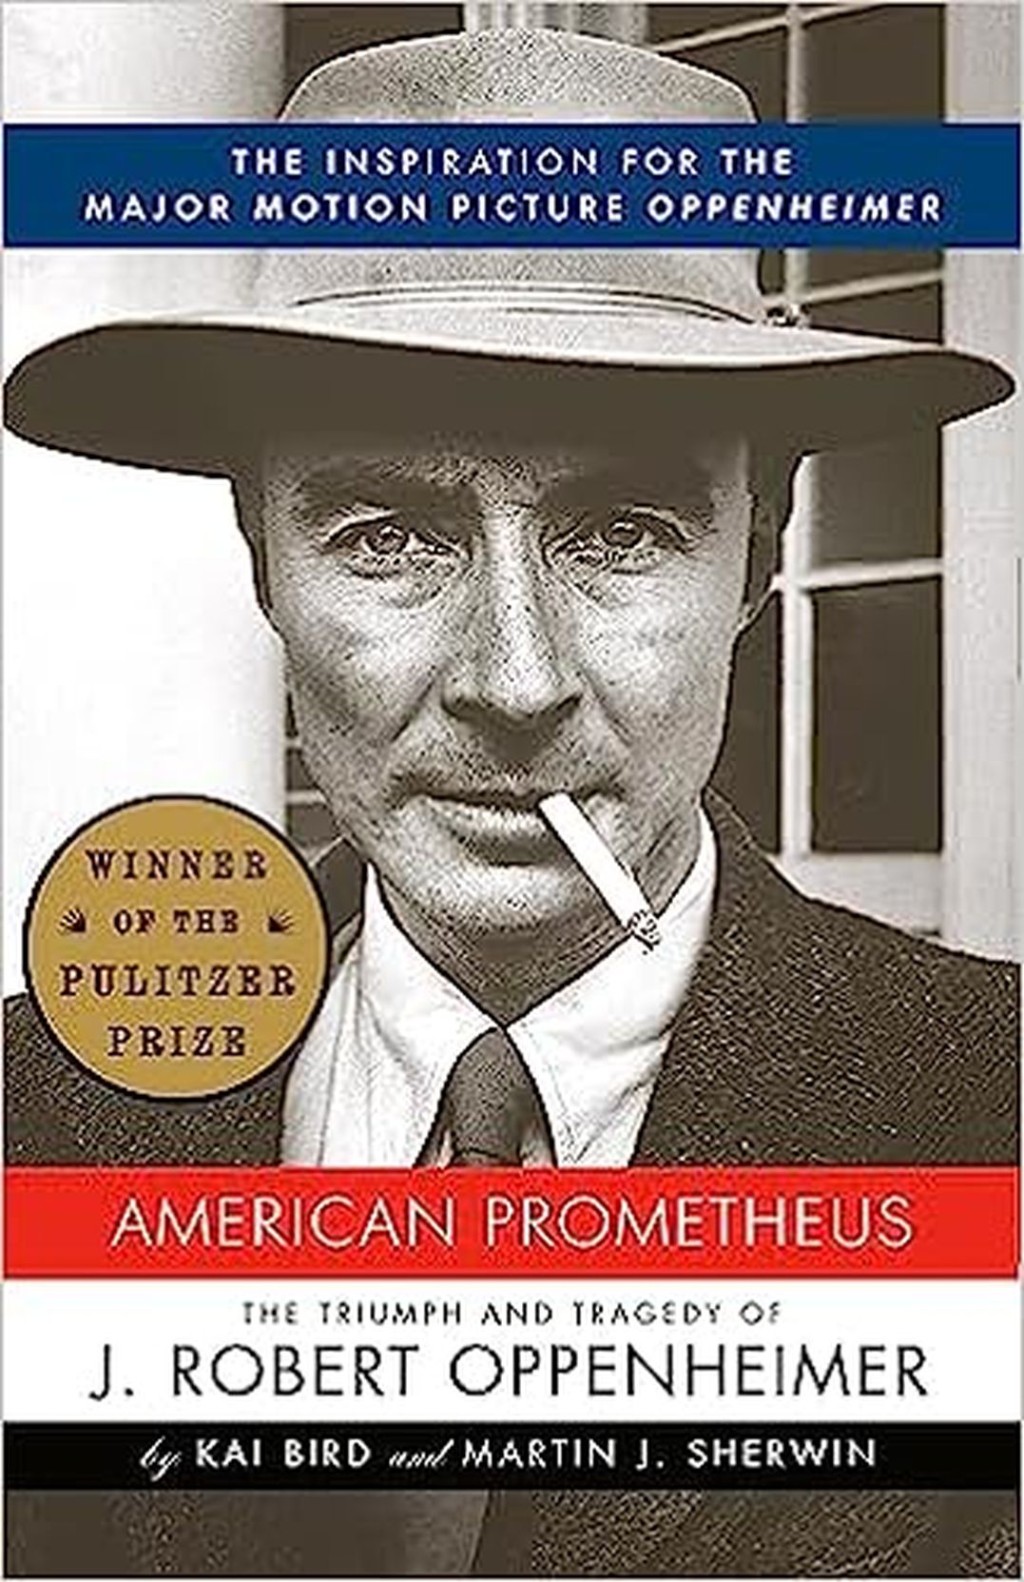 奥本海默｜《奥本海默》改编自卡伊·伯德和马丁·J·舒尔文撰写的得奖传记《美国普罗米修斯》（《American Prometheus: The Triumph and Tragedy of J. Robert Oppenheimer》），讲述关于有「原子弹之父」之称的奥本海默（Julius Robert Oppenheimer）于二战期间参与「曼哈顿计画」，设计了人类首颗原子弹的故事。